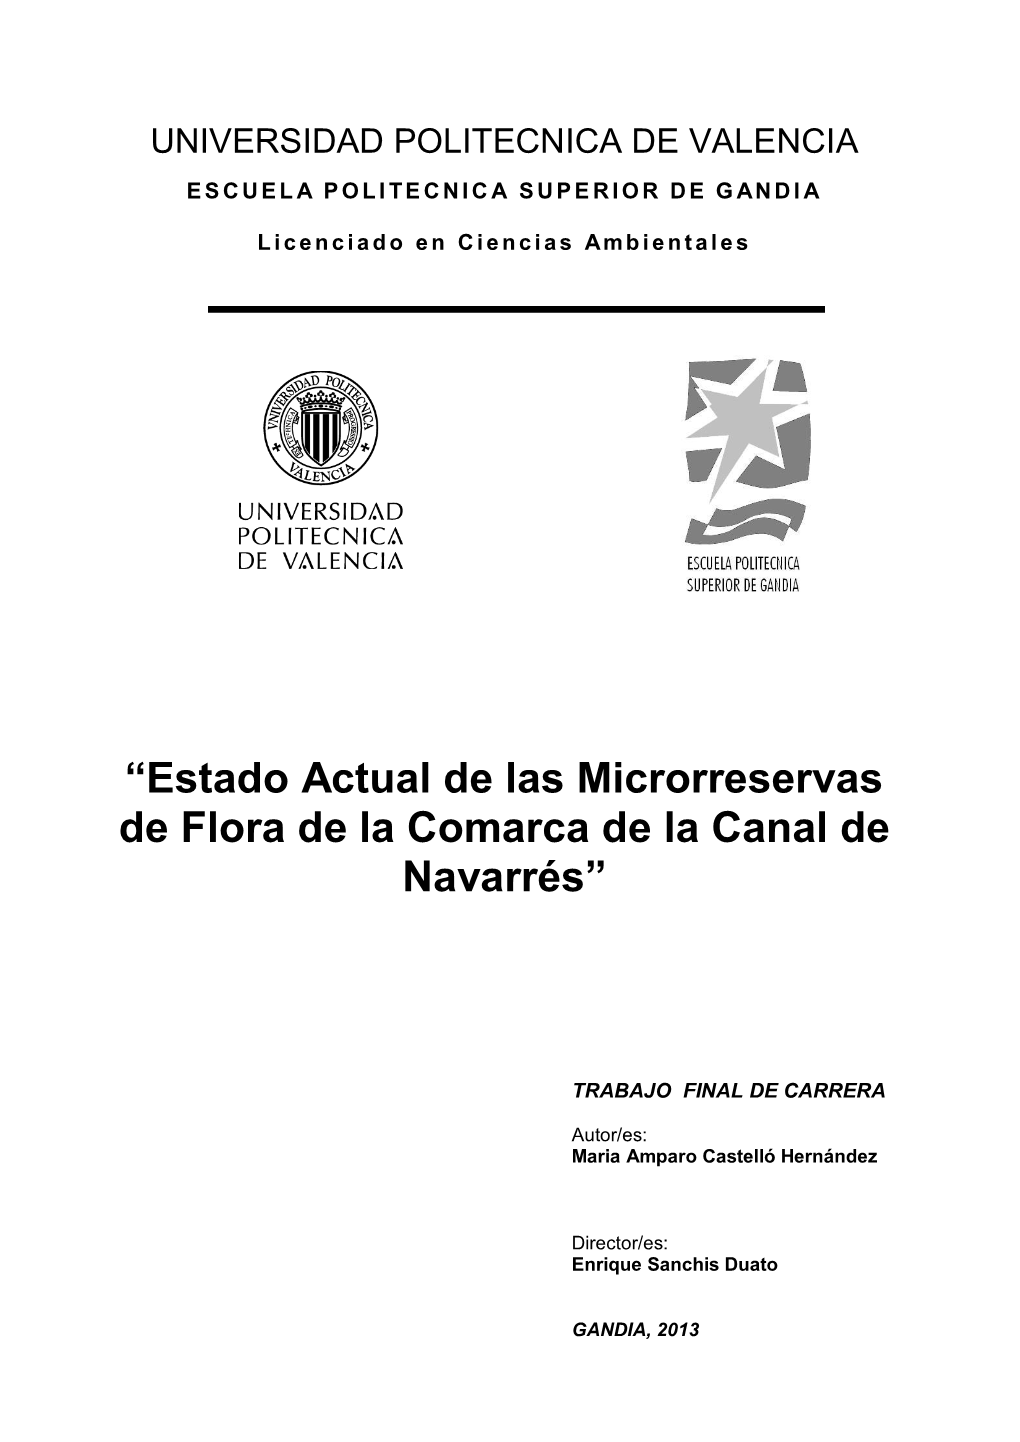 Estado Actual De Las Microrreservas De Flora De La Comarca De La Canal De Navarrés”